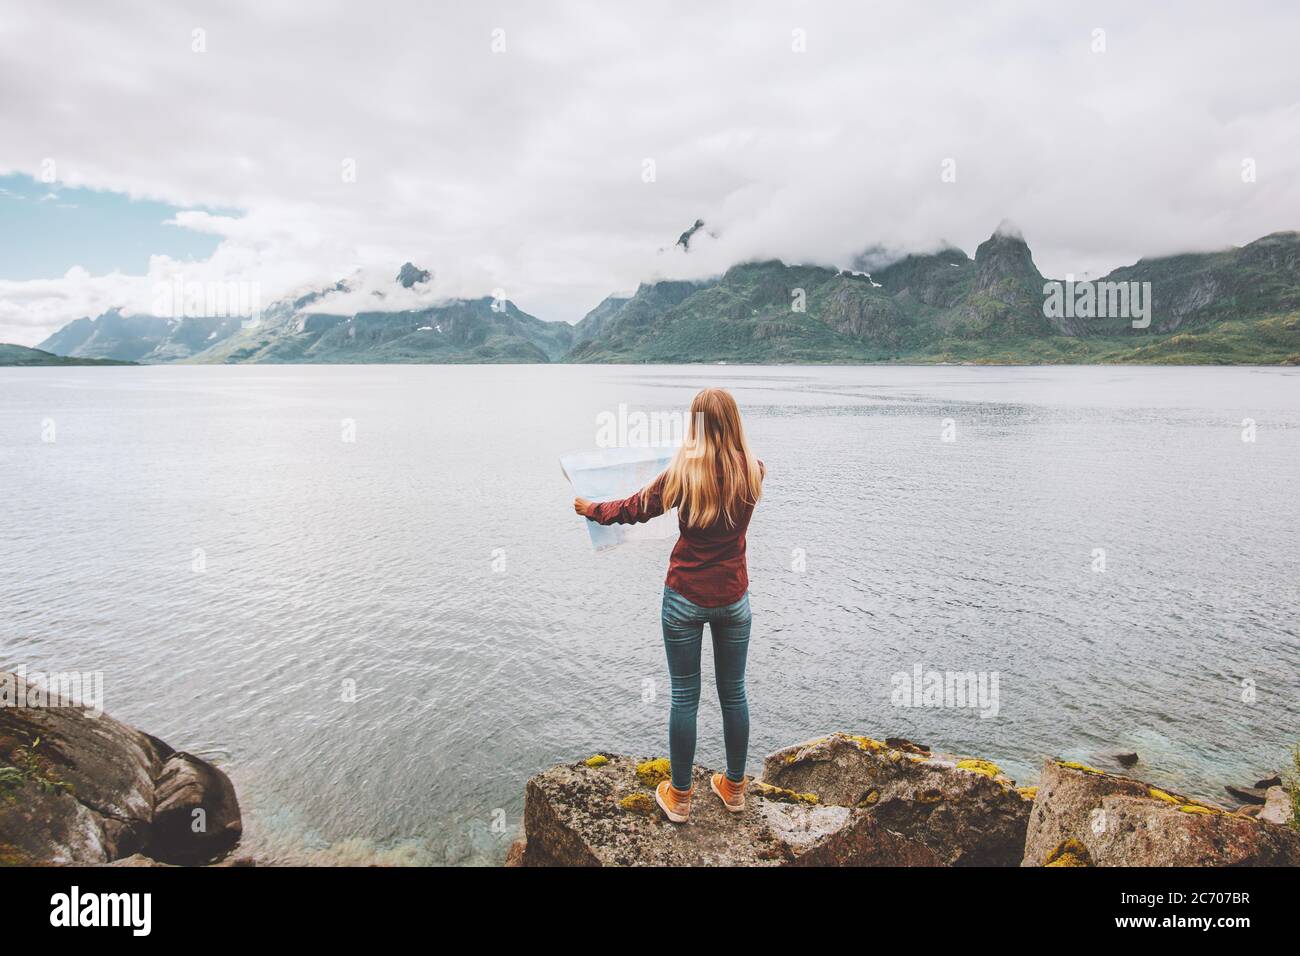 Frau auf der Karte Planung Urlaub Reisen allein in Norwegen aktiv Abenteuer Lifestyle Meer Fjord und nebligen Bergen Landschaft Stockfoto